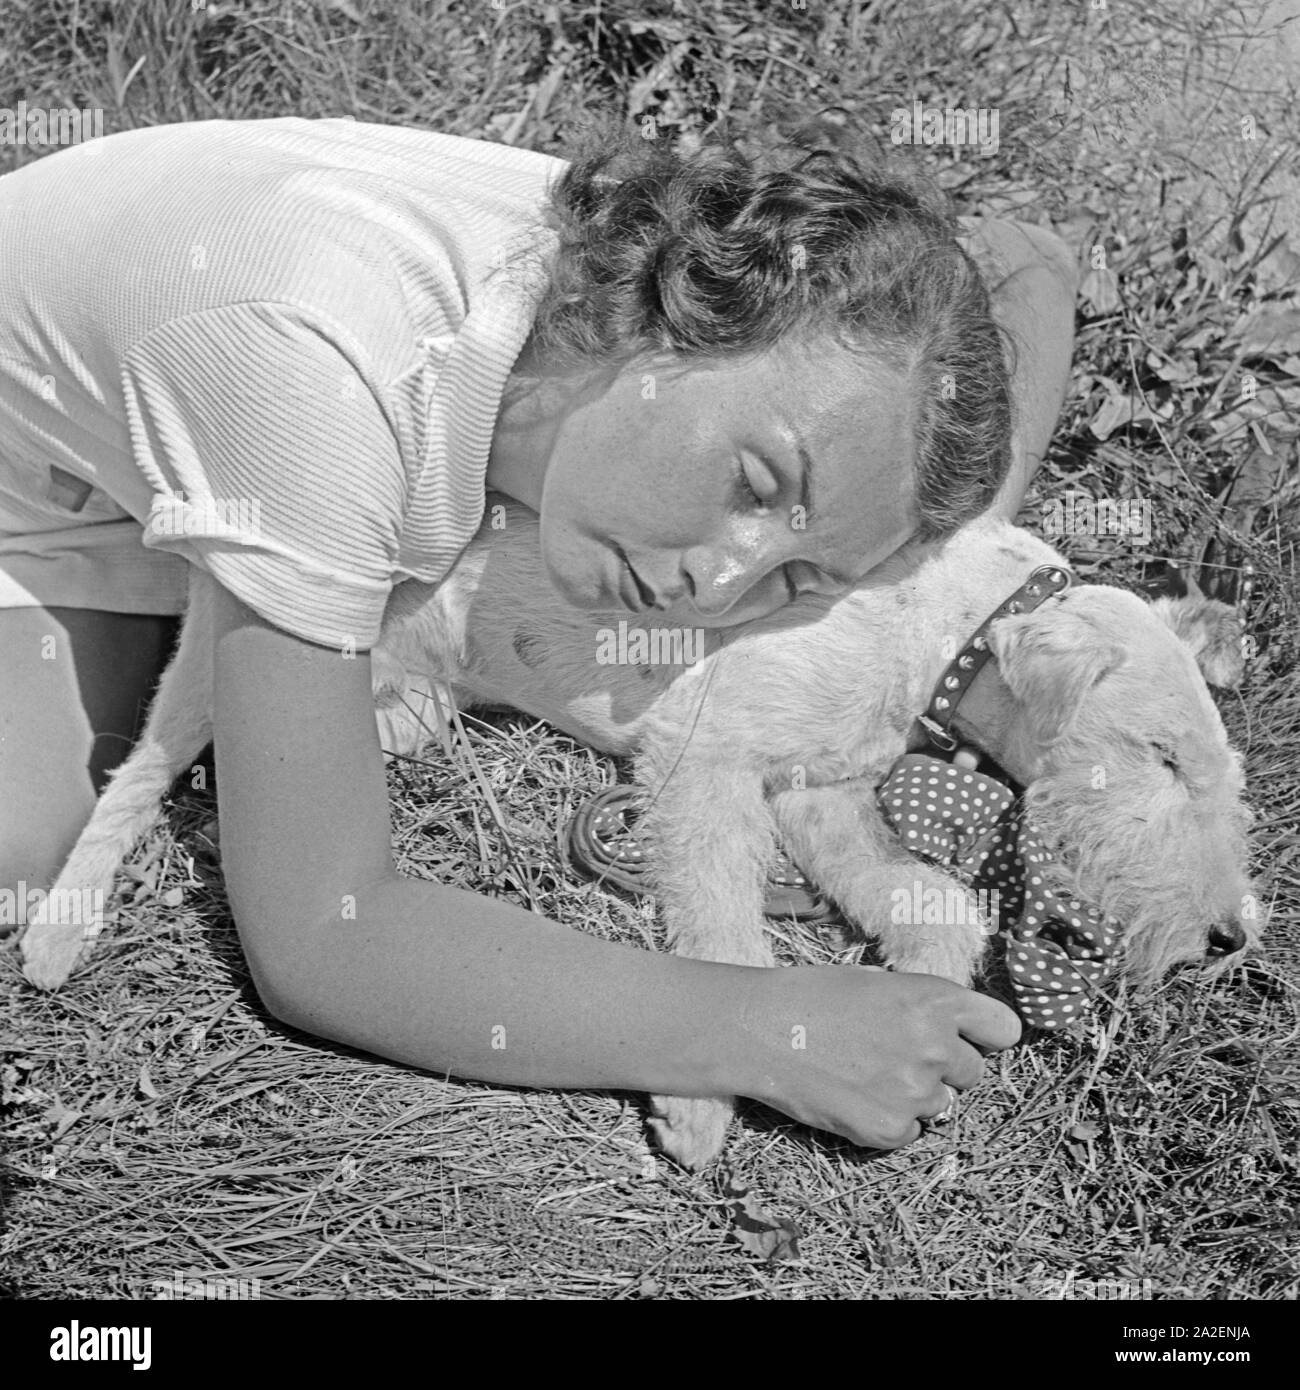 Eine junge Frau ist auf einer Wiese mit ihrem Foxterrier eingeschlafen, Deutschland 1930er Jahre. A young woman and her fox terrier pup fell asleep in a lawn, Germany 1930s. Stock Photo